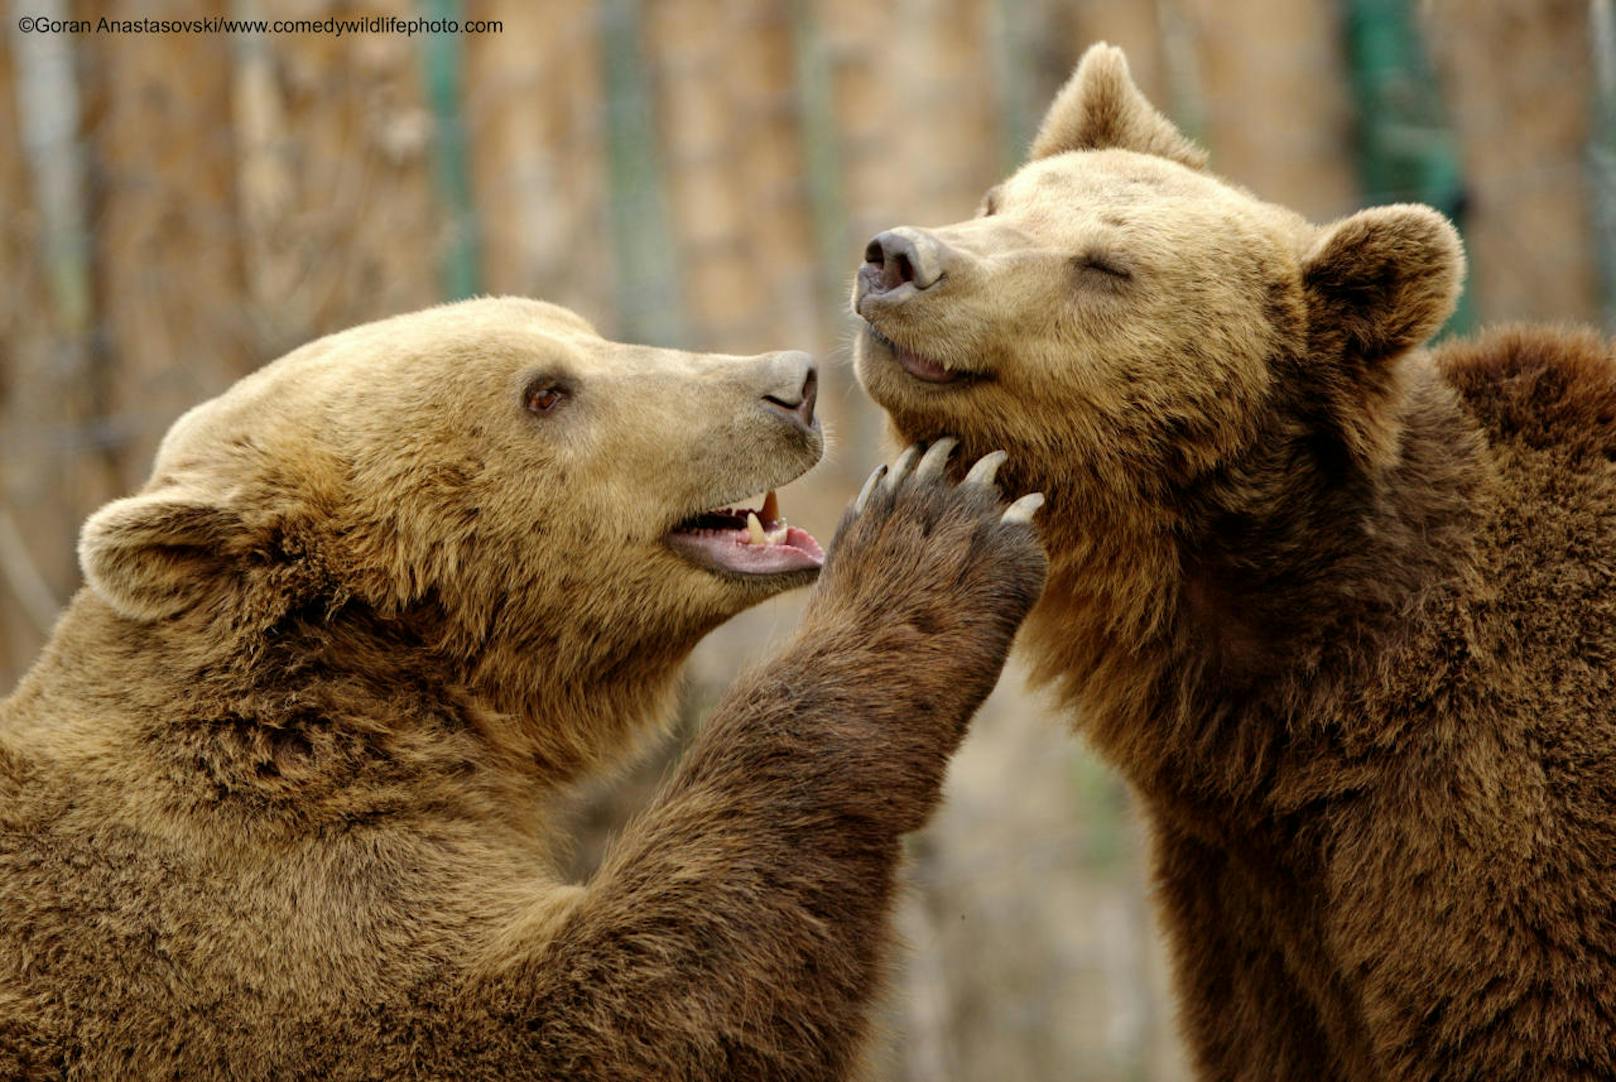 <b>Bären beim Spielen</b>

"Bears" von Goran Anastasovski
Ort: Mazedonien